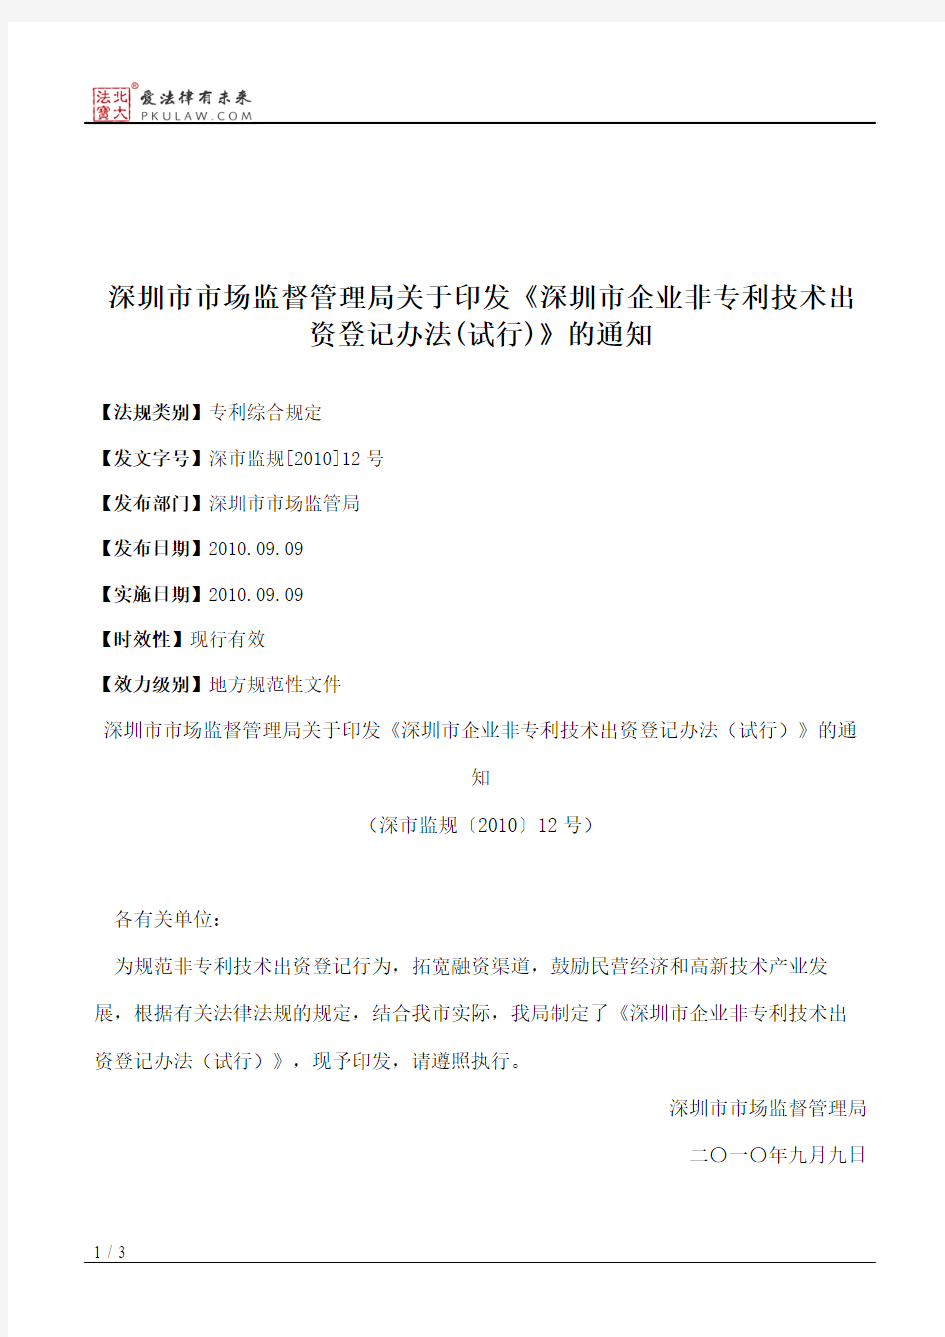 深圳市市场监督管理局关于印发《深圳市企业非专利技术出资登记办